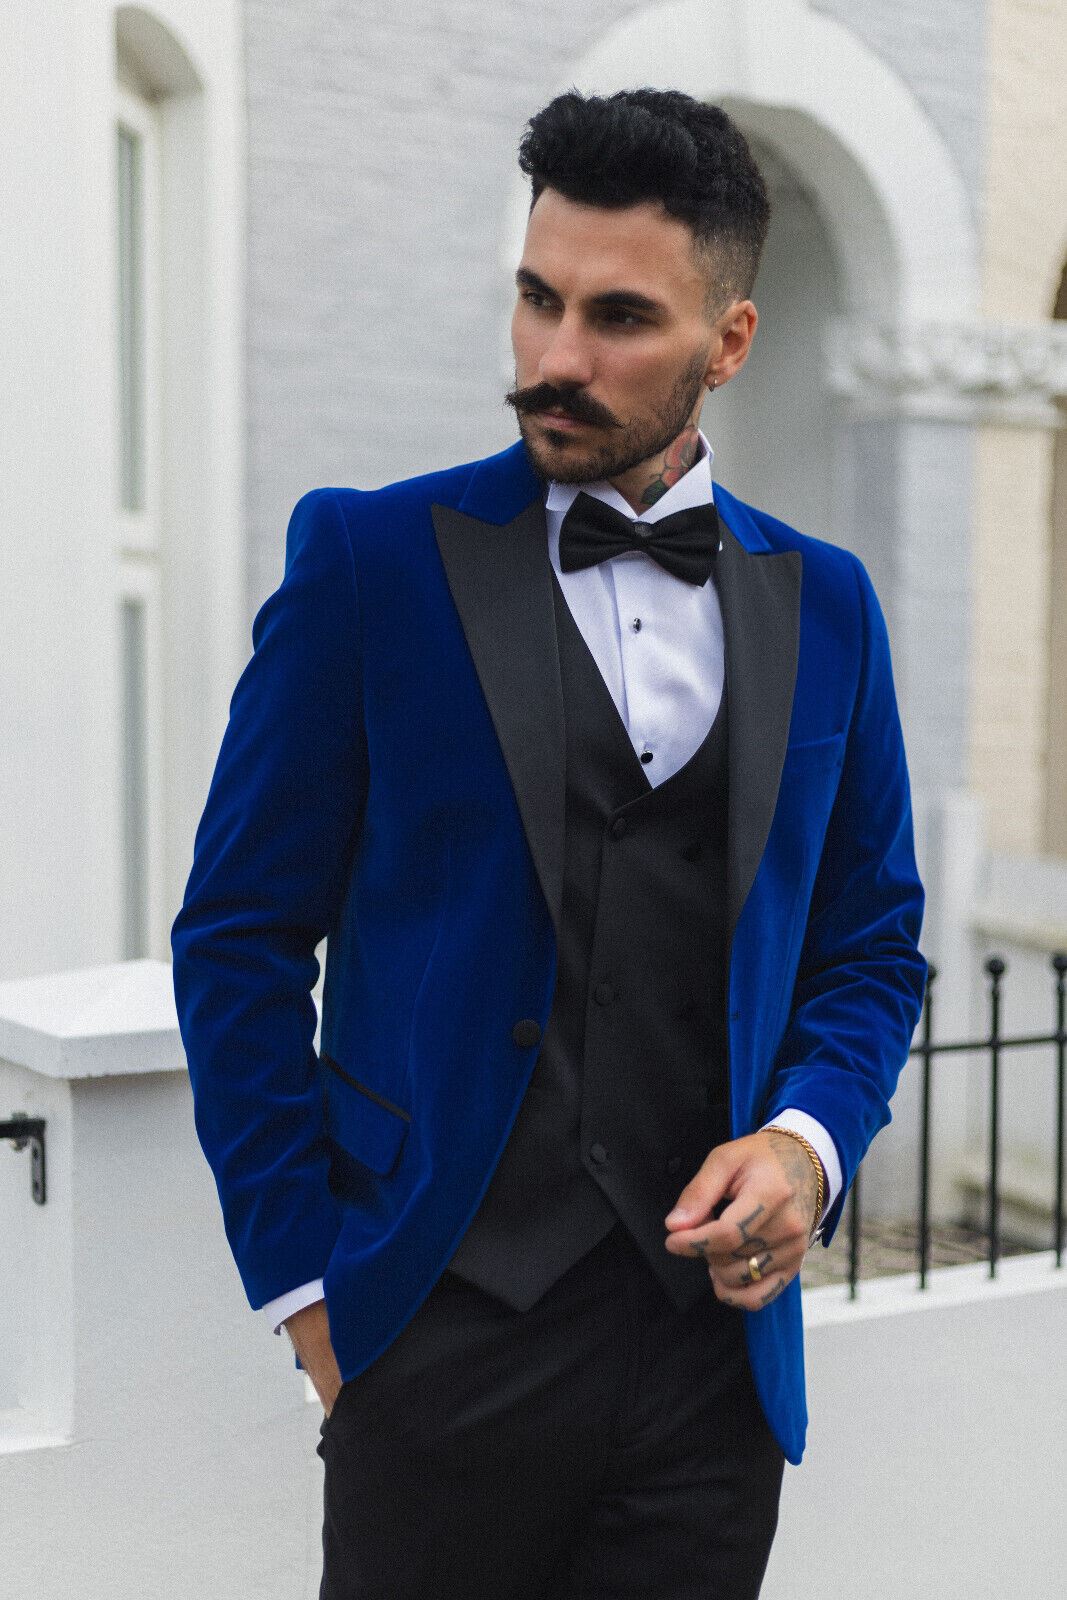 Mens Blue Velvet Dinner Tuxedo Suit Jacket Blazer